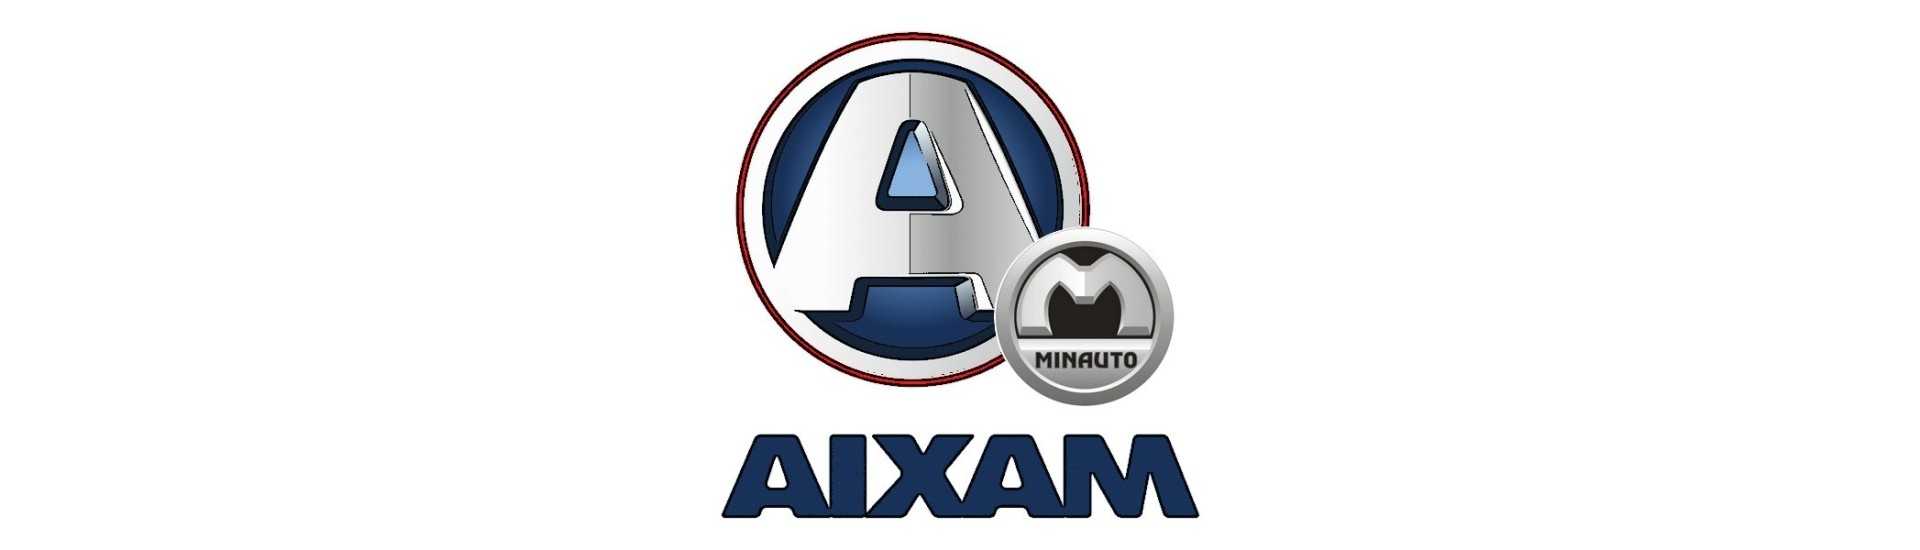 Cel mai bun preț pentru o mașină fără permis Aixam Minauto